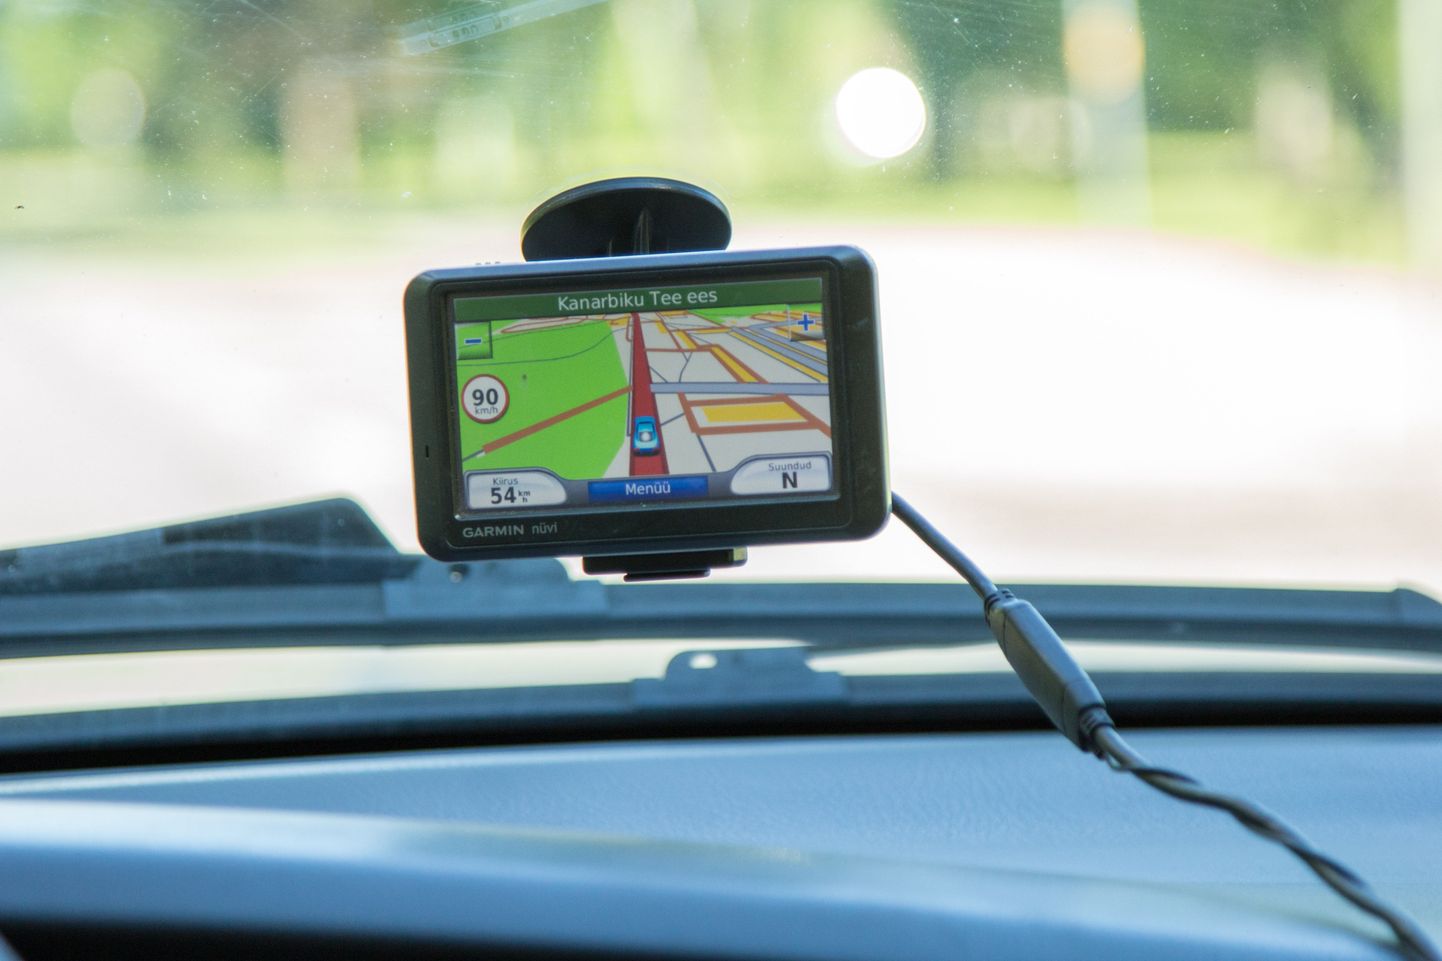 Garmini navigatsioonisüsteem peaks pakkuma kiireimat teed sihtkohta.